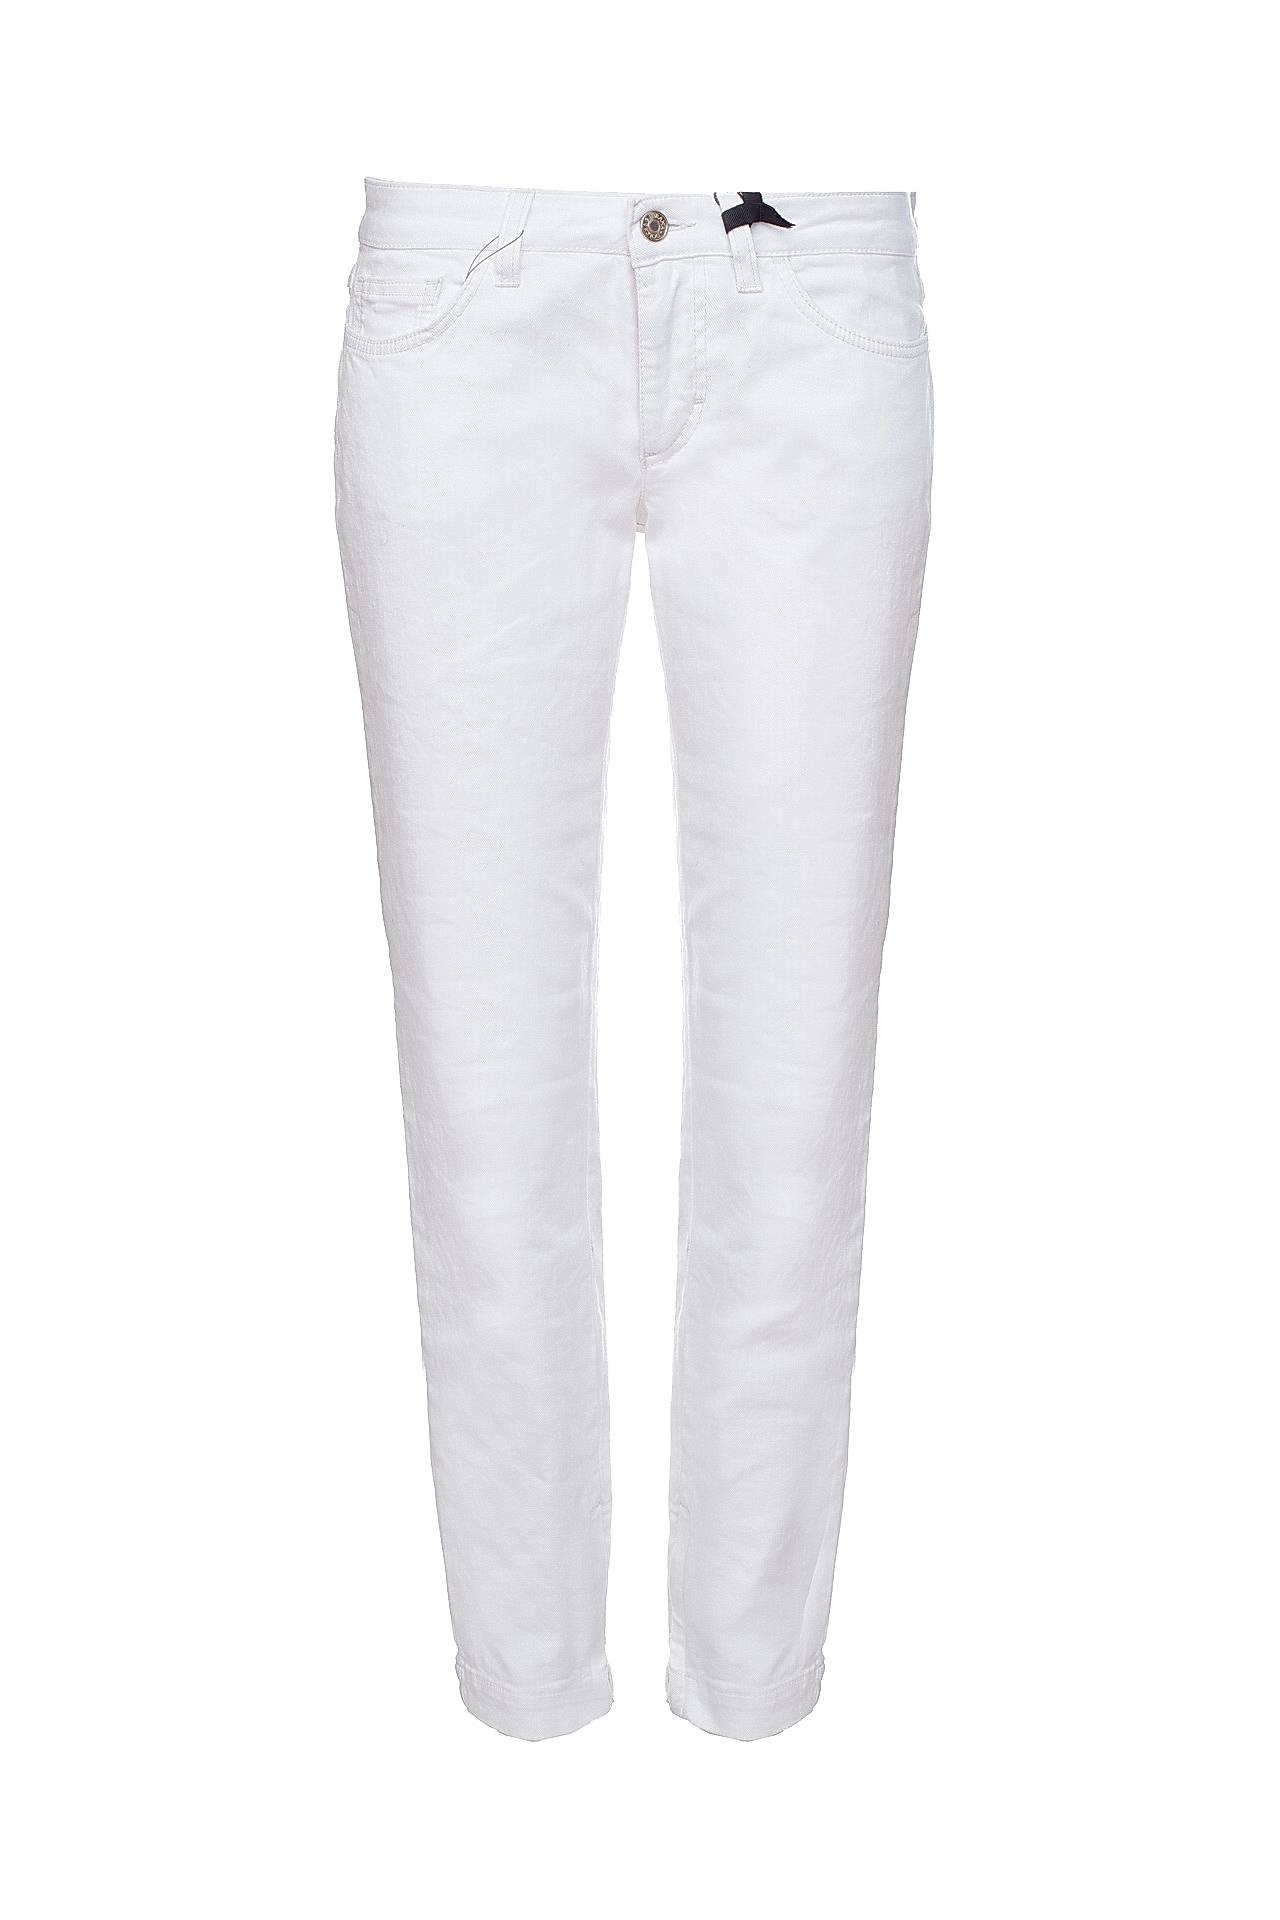 Валберис белые брюки. Белые джинсы Дольче Габбана женские. Лагерфельд стретч джинсы белые. Белые джинсы женские зауженные. Теплые белые джинсы женские.